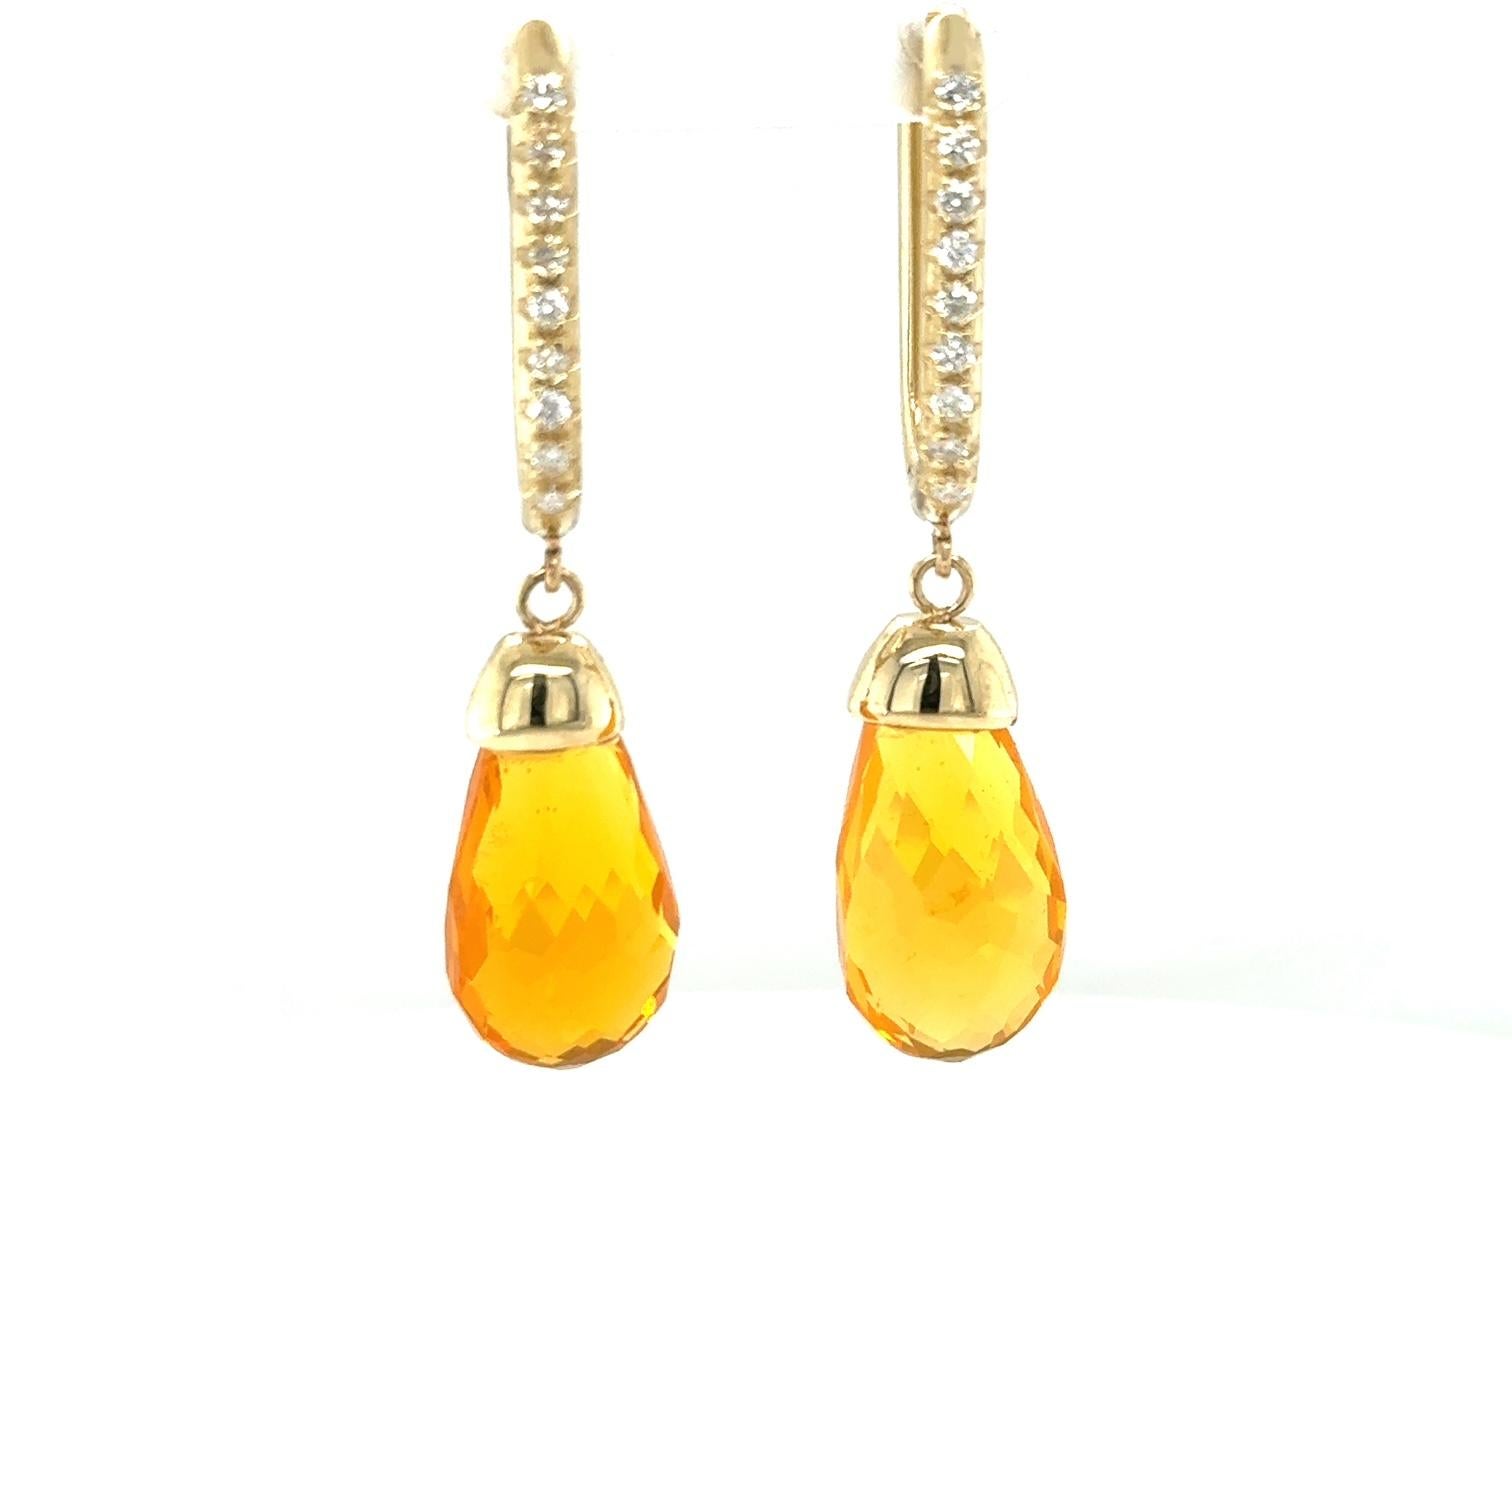 Briolette Cut 12.84 Carat Fire Opal Diamond Yellow Gold Drop Earrings For Sale